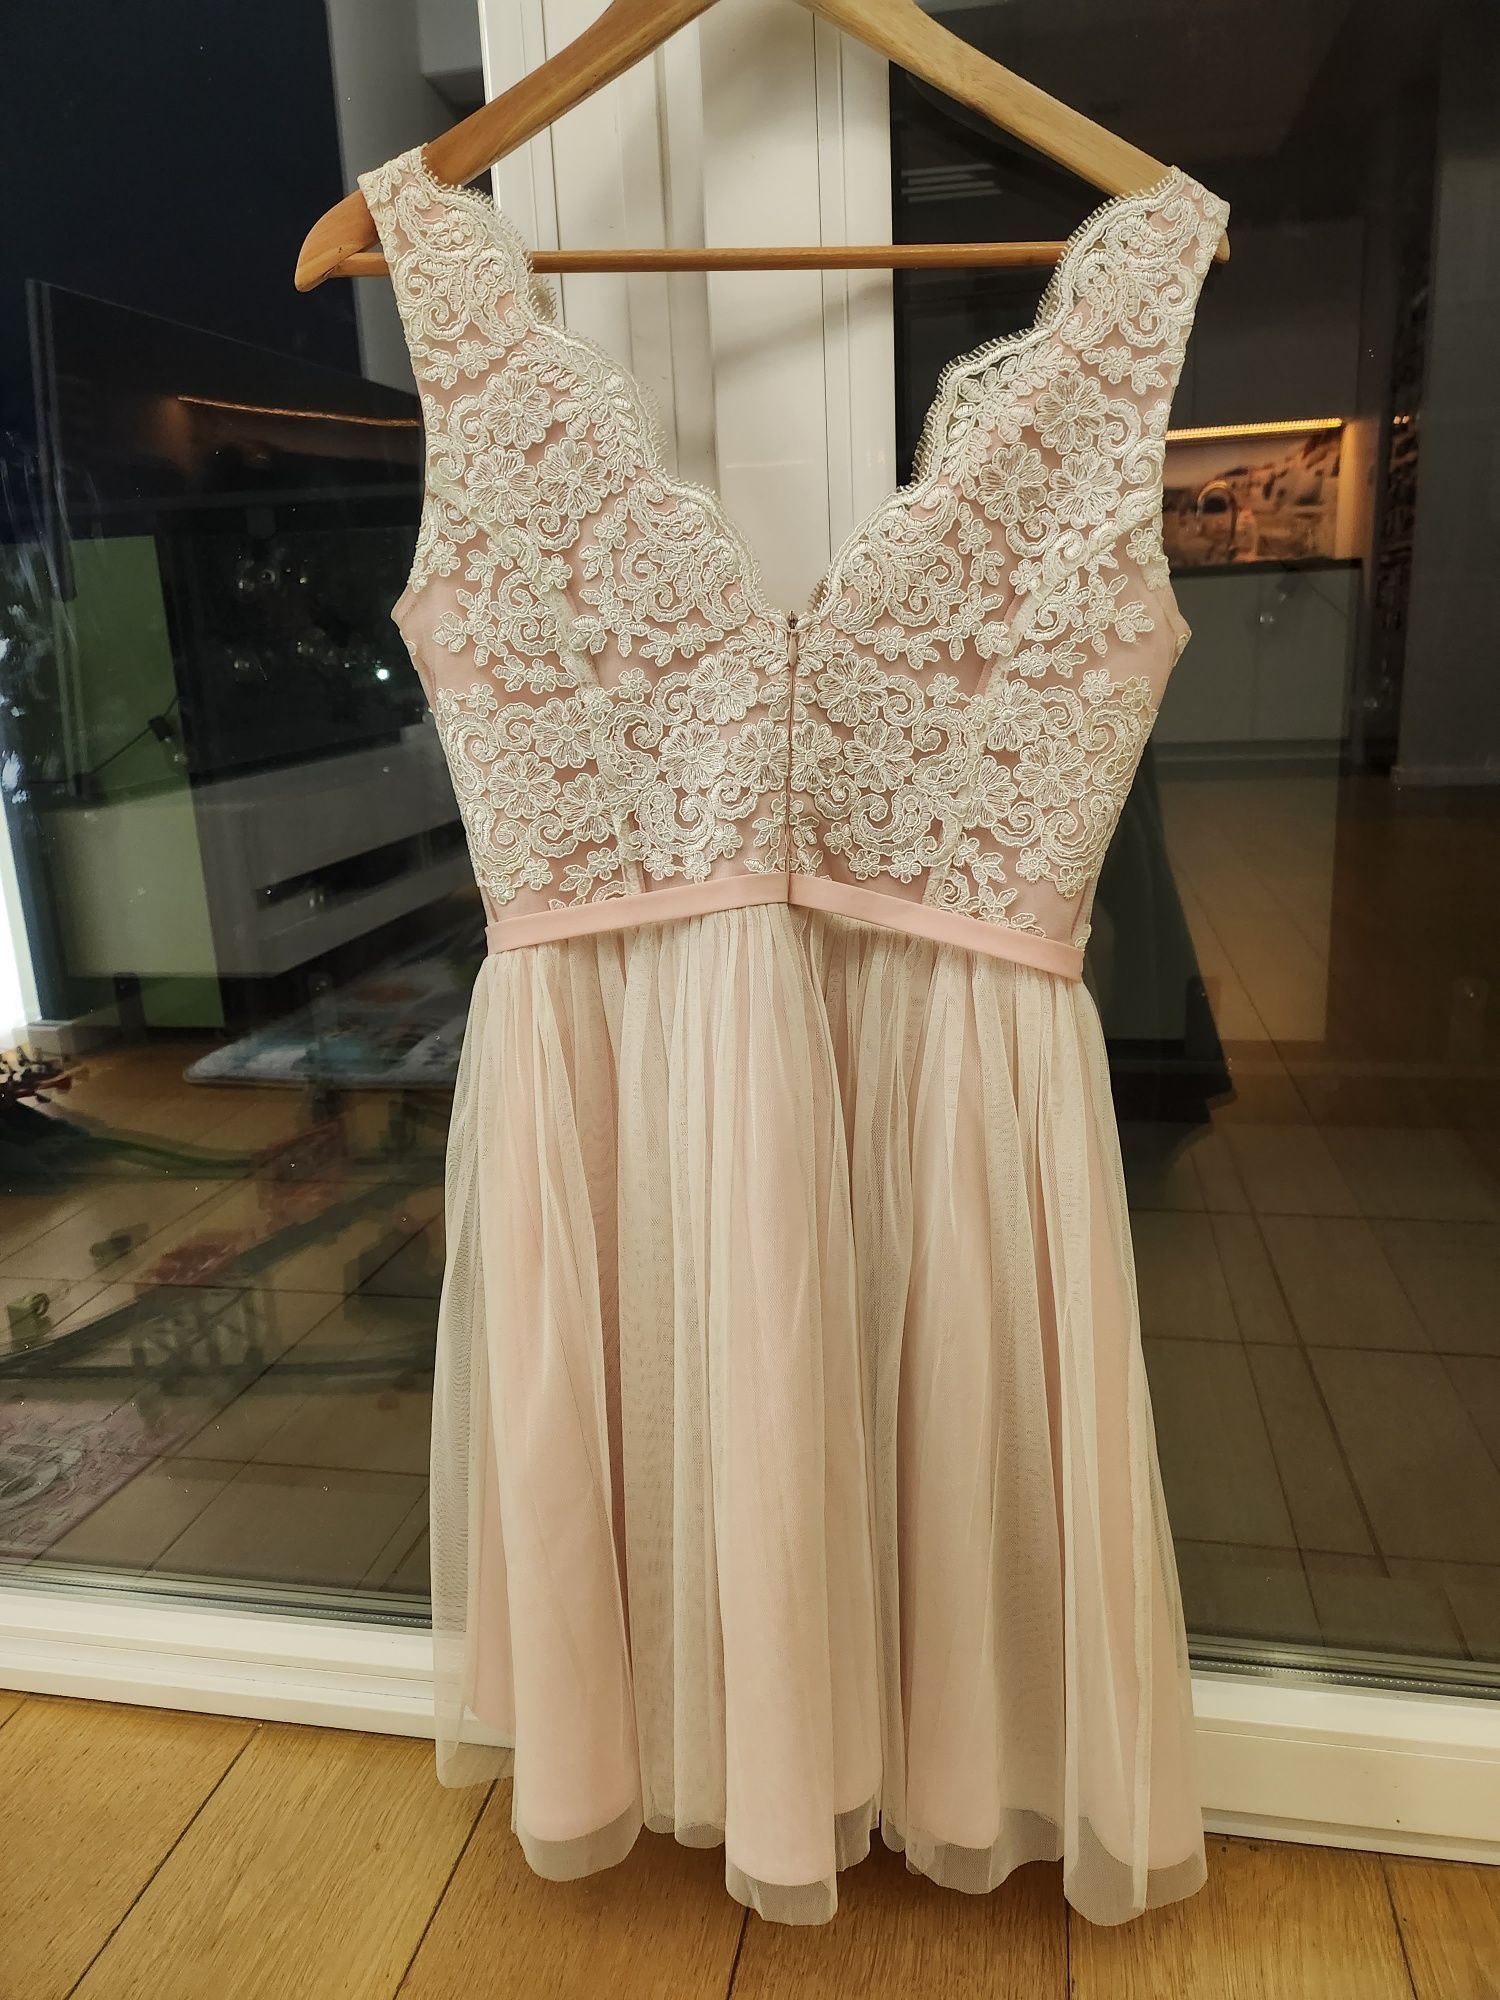 Śliczna sukienka Bicotone 2206-32, r. 38, raz ubrana